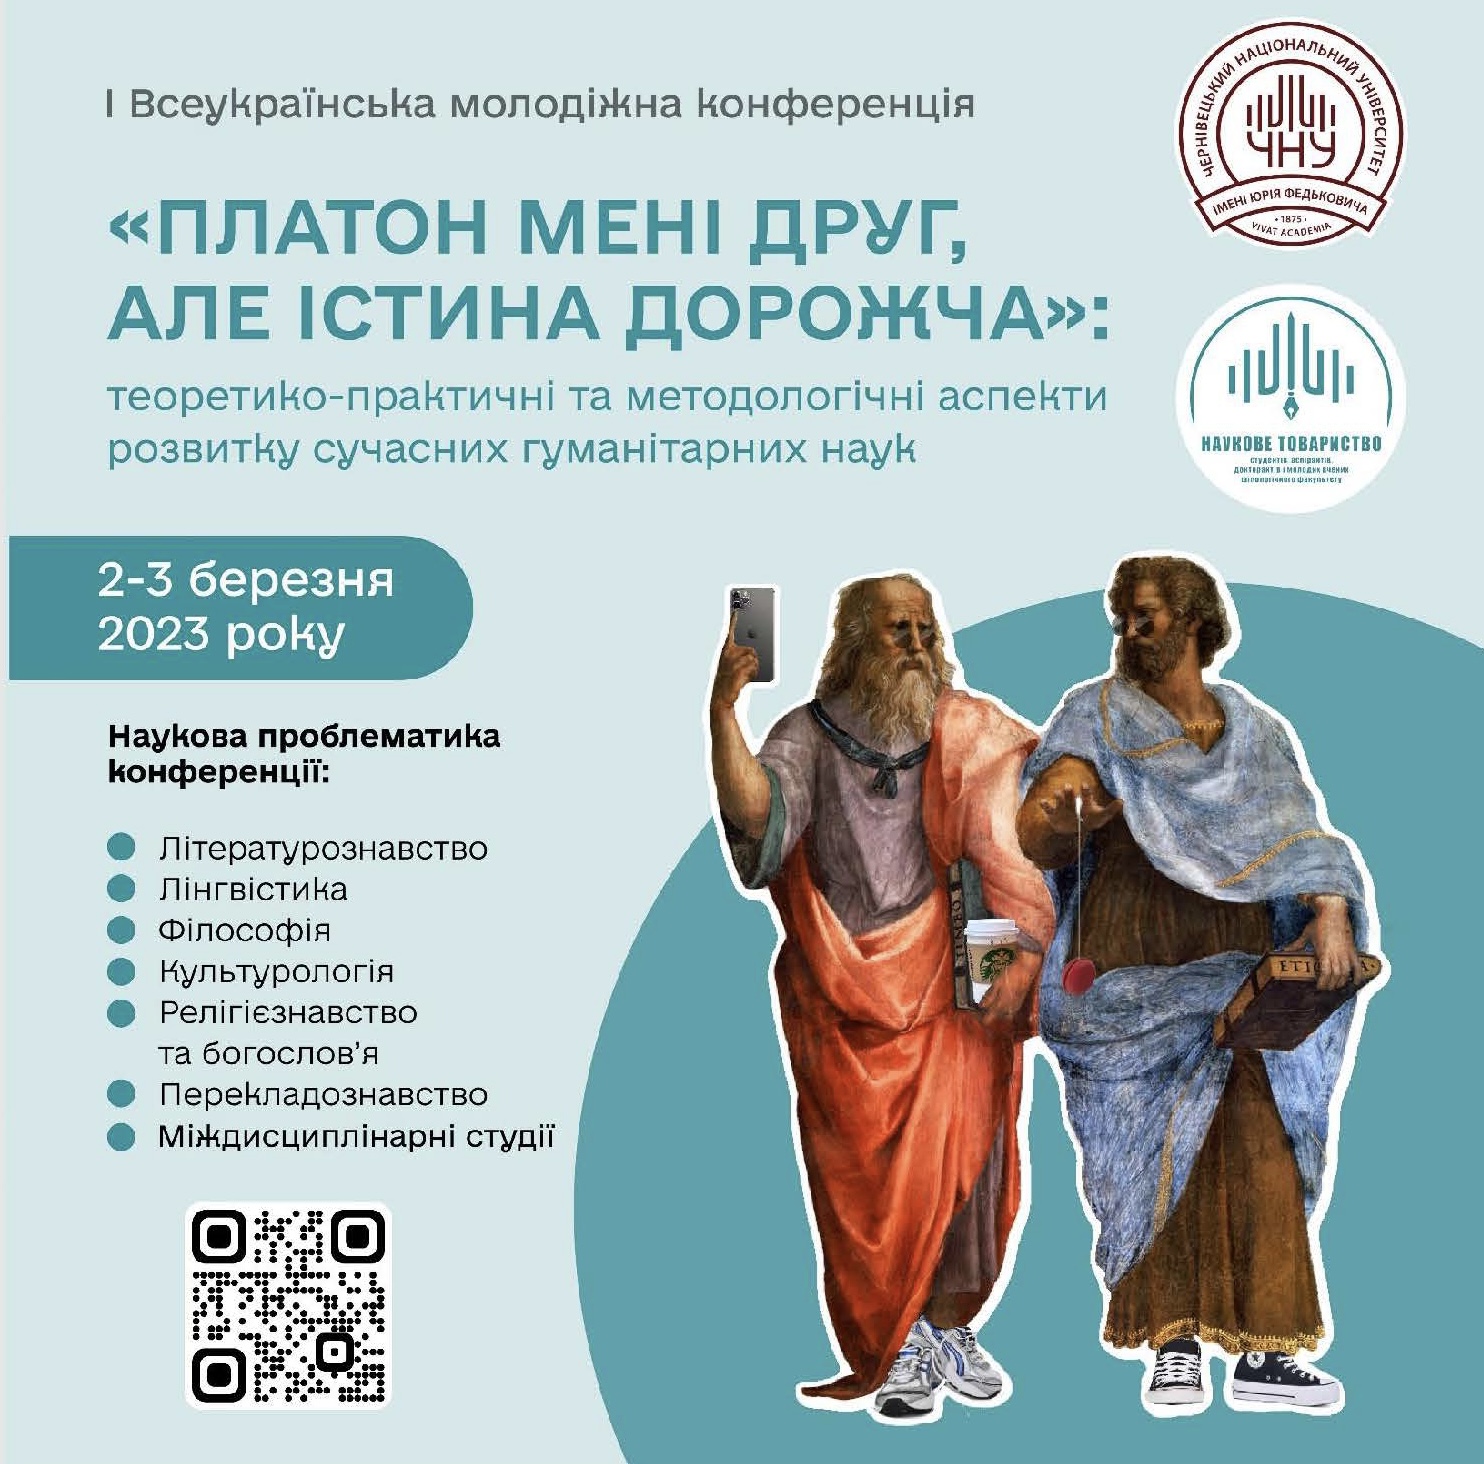 Запрошення до участі у Всеукраїнській молодіжній конференції